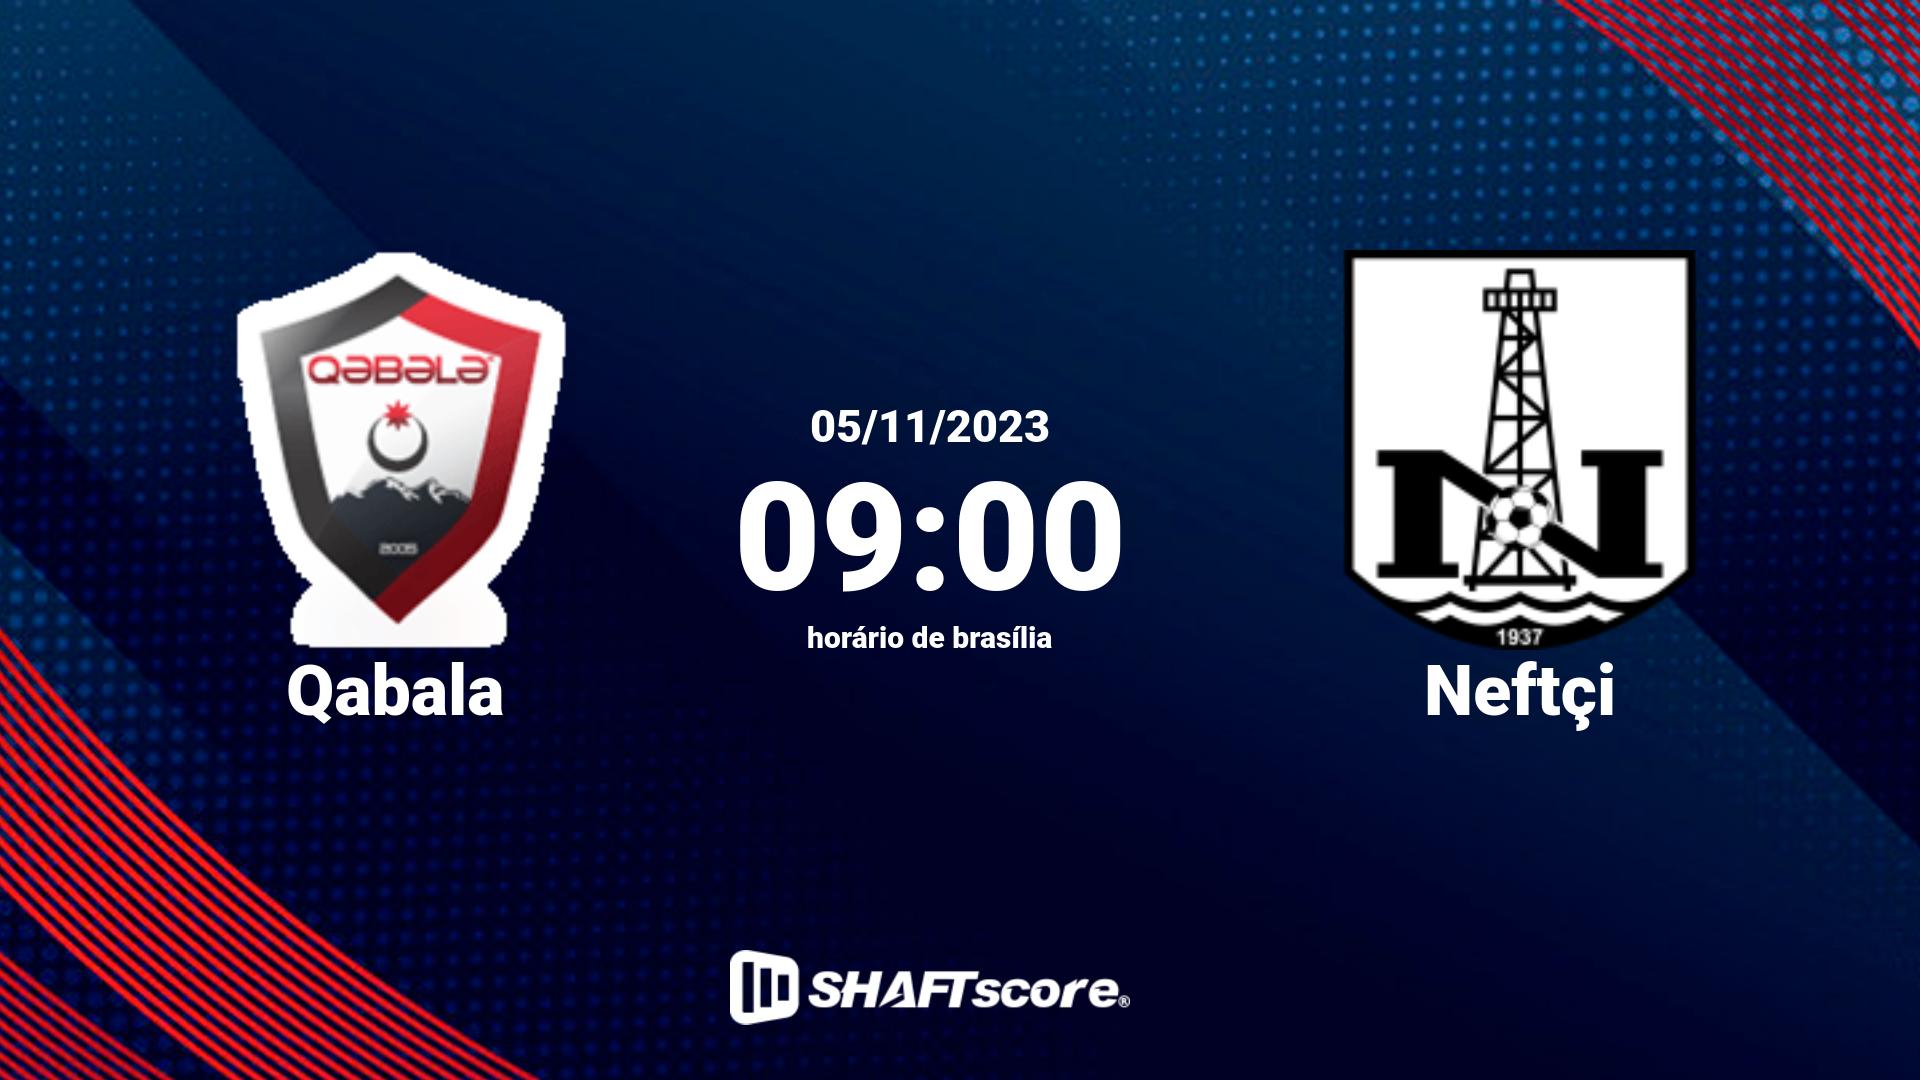 Estatísticas do jogo Qabala vs Neftçi 05.11 09:00